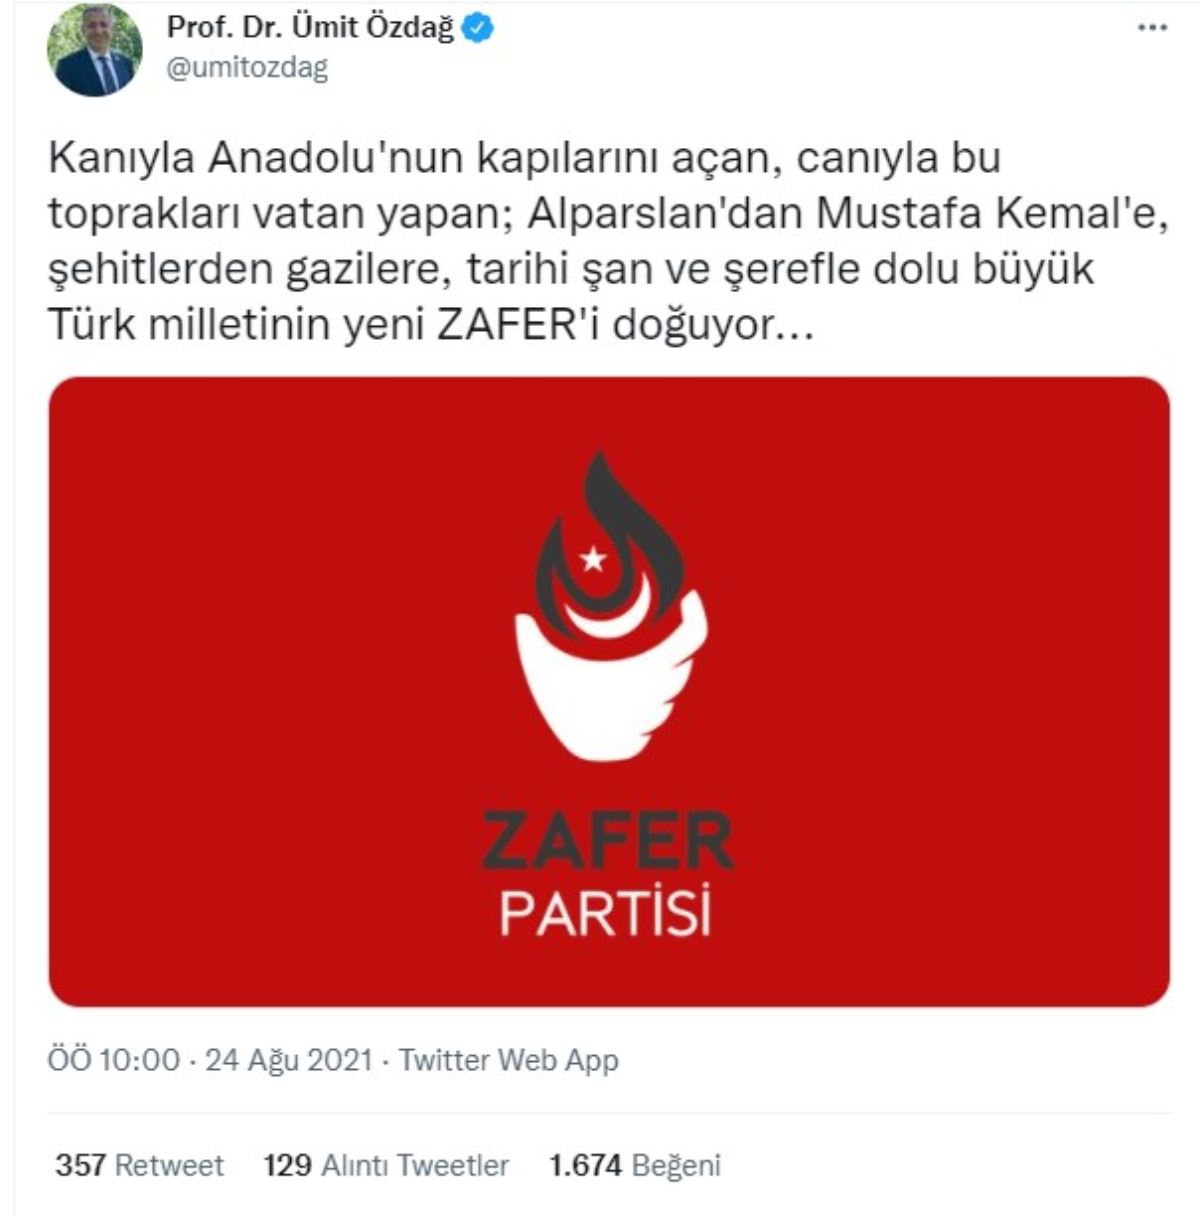 Ümit Özdağ, partisinin logosunu ve ismini duyurdu